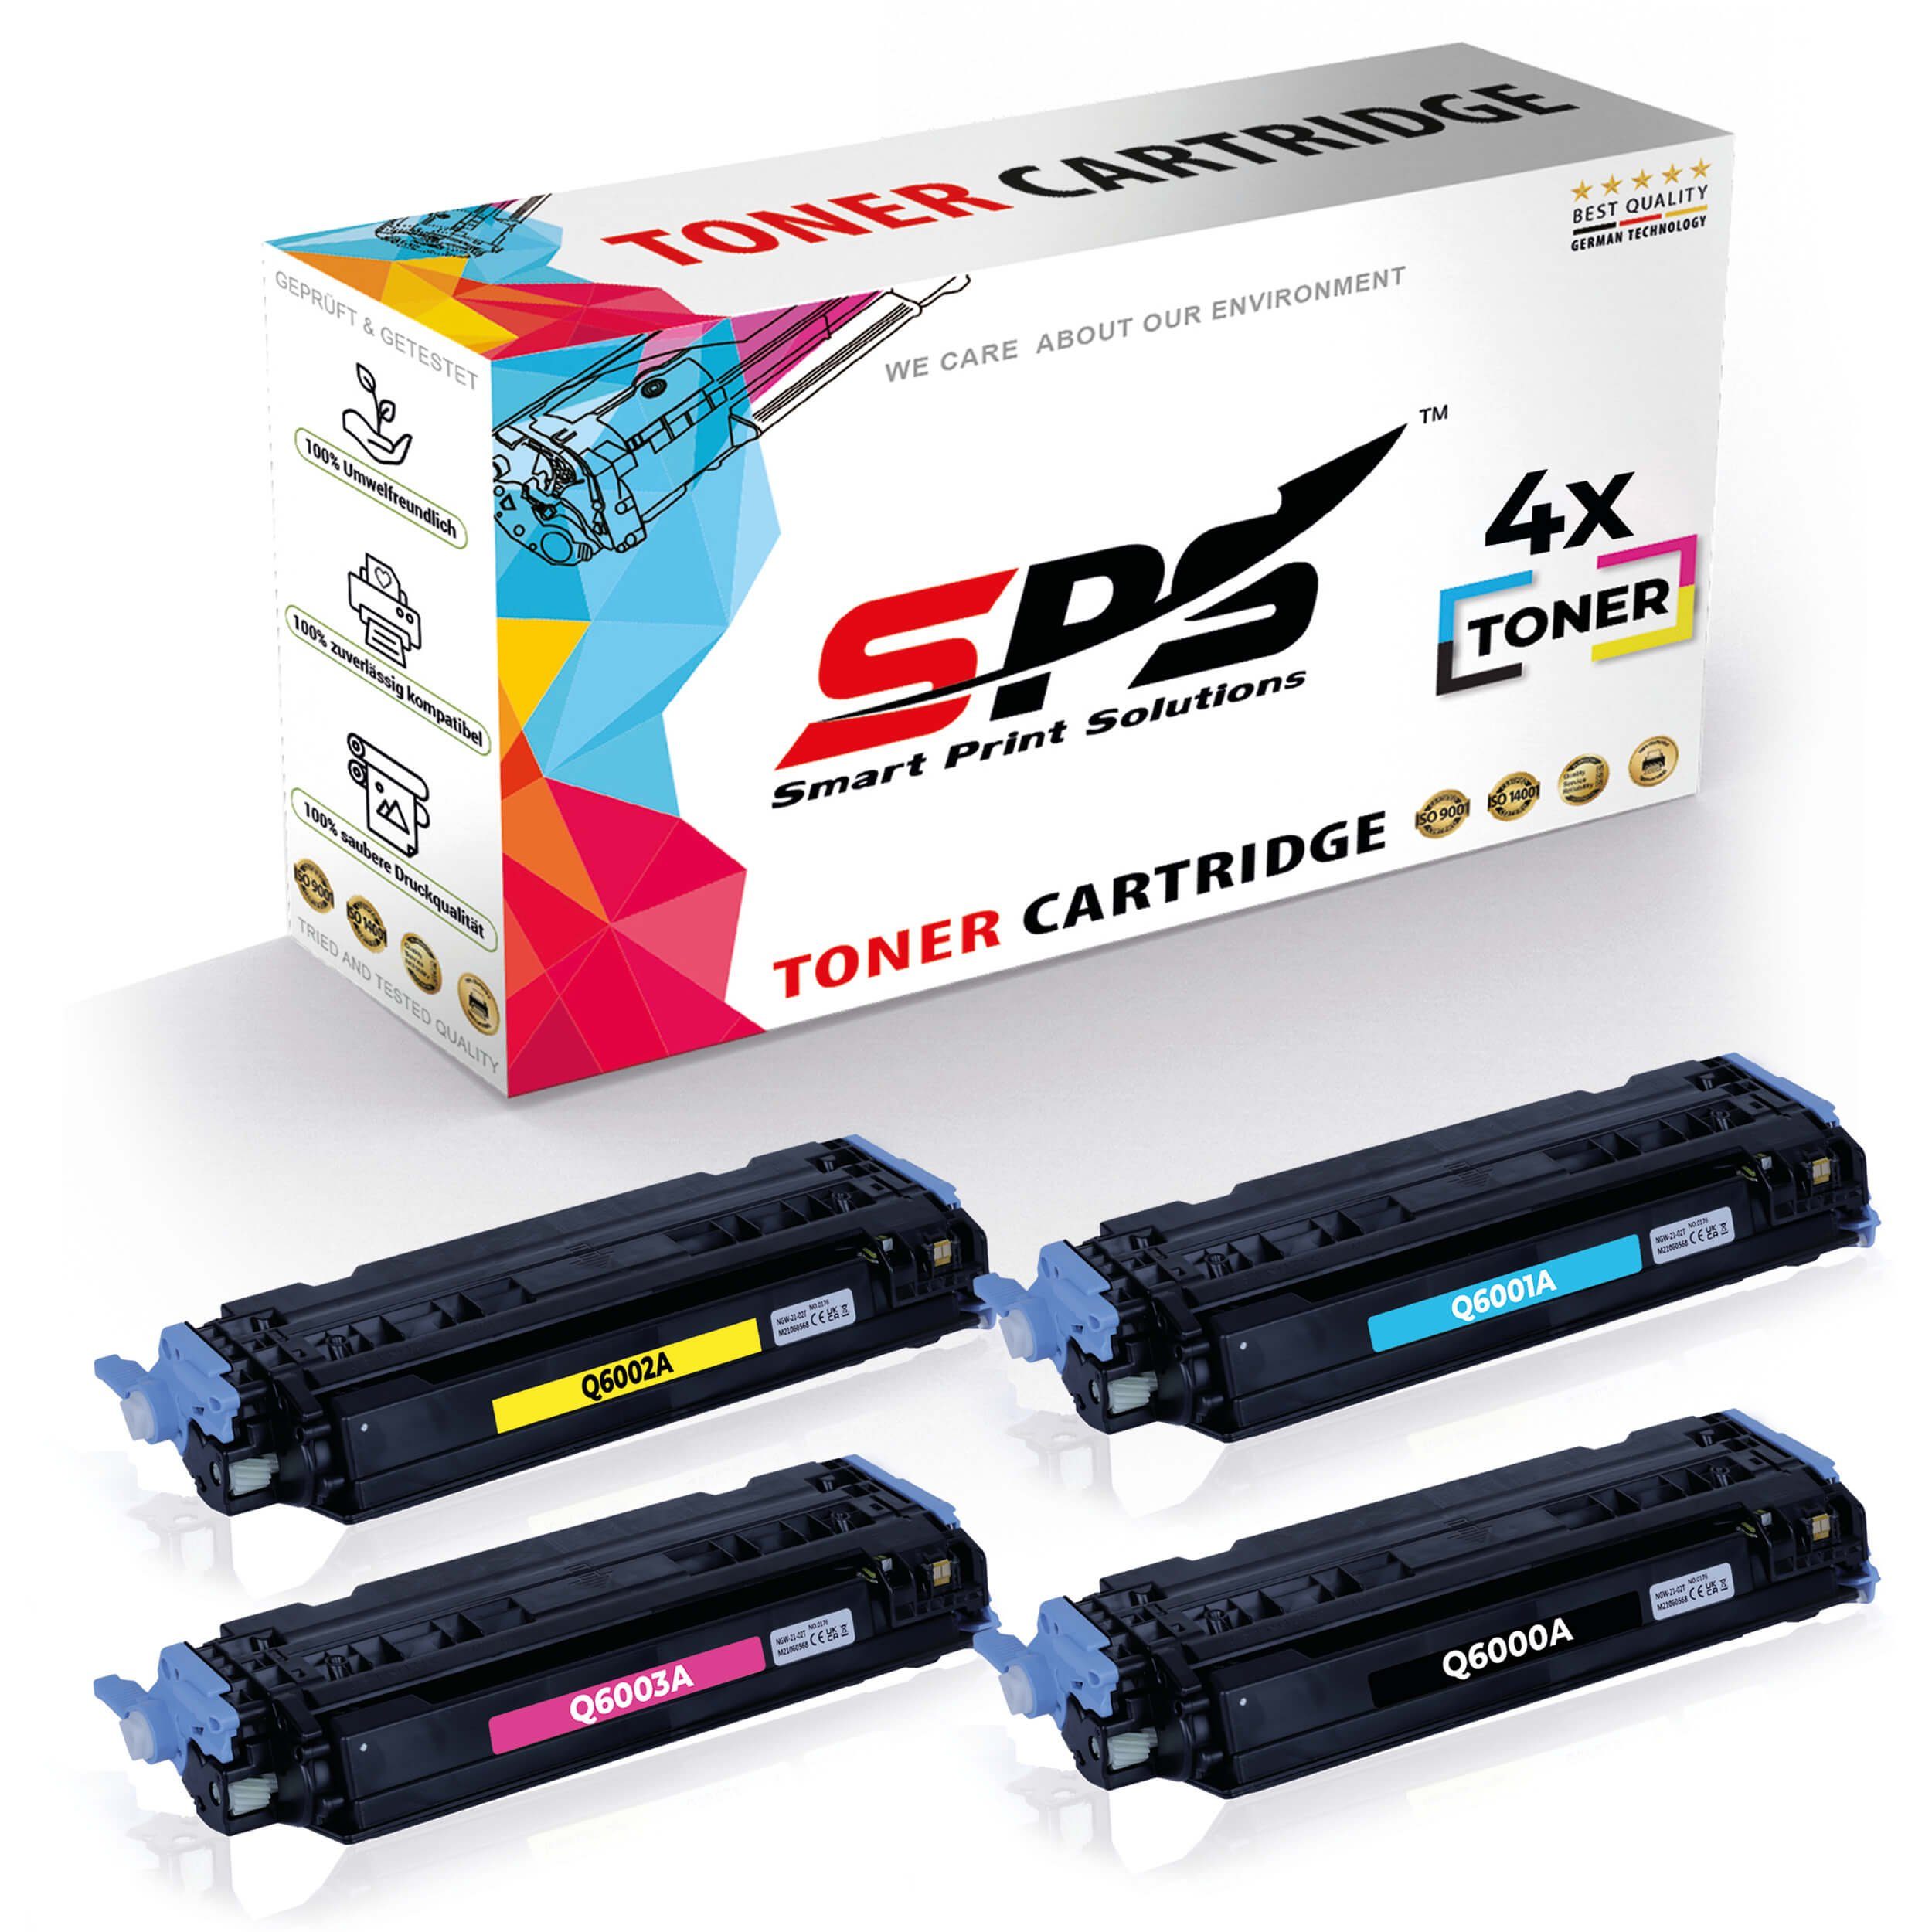 SPS Tonerkartusche 4x Multipack Set Kompatibel für HP Color LaserJet 2600 Series (124A/Q6, (4er Pack)